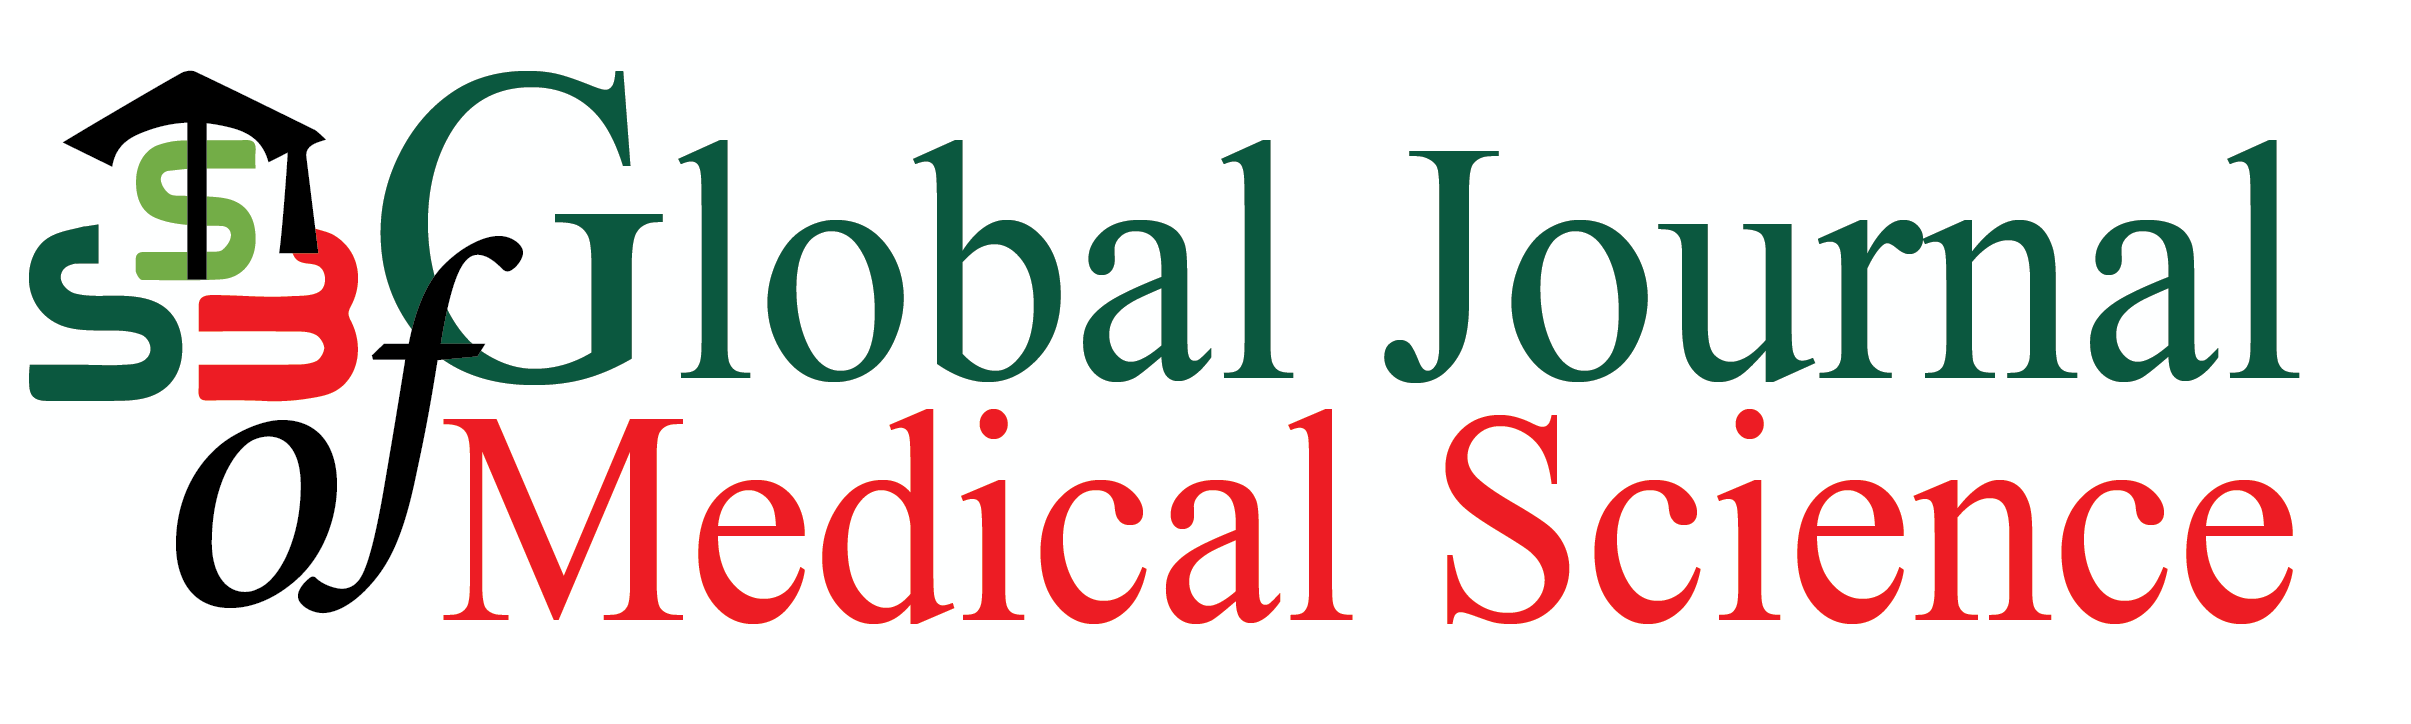 SSB Global Journal of Medical Science (transparent)